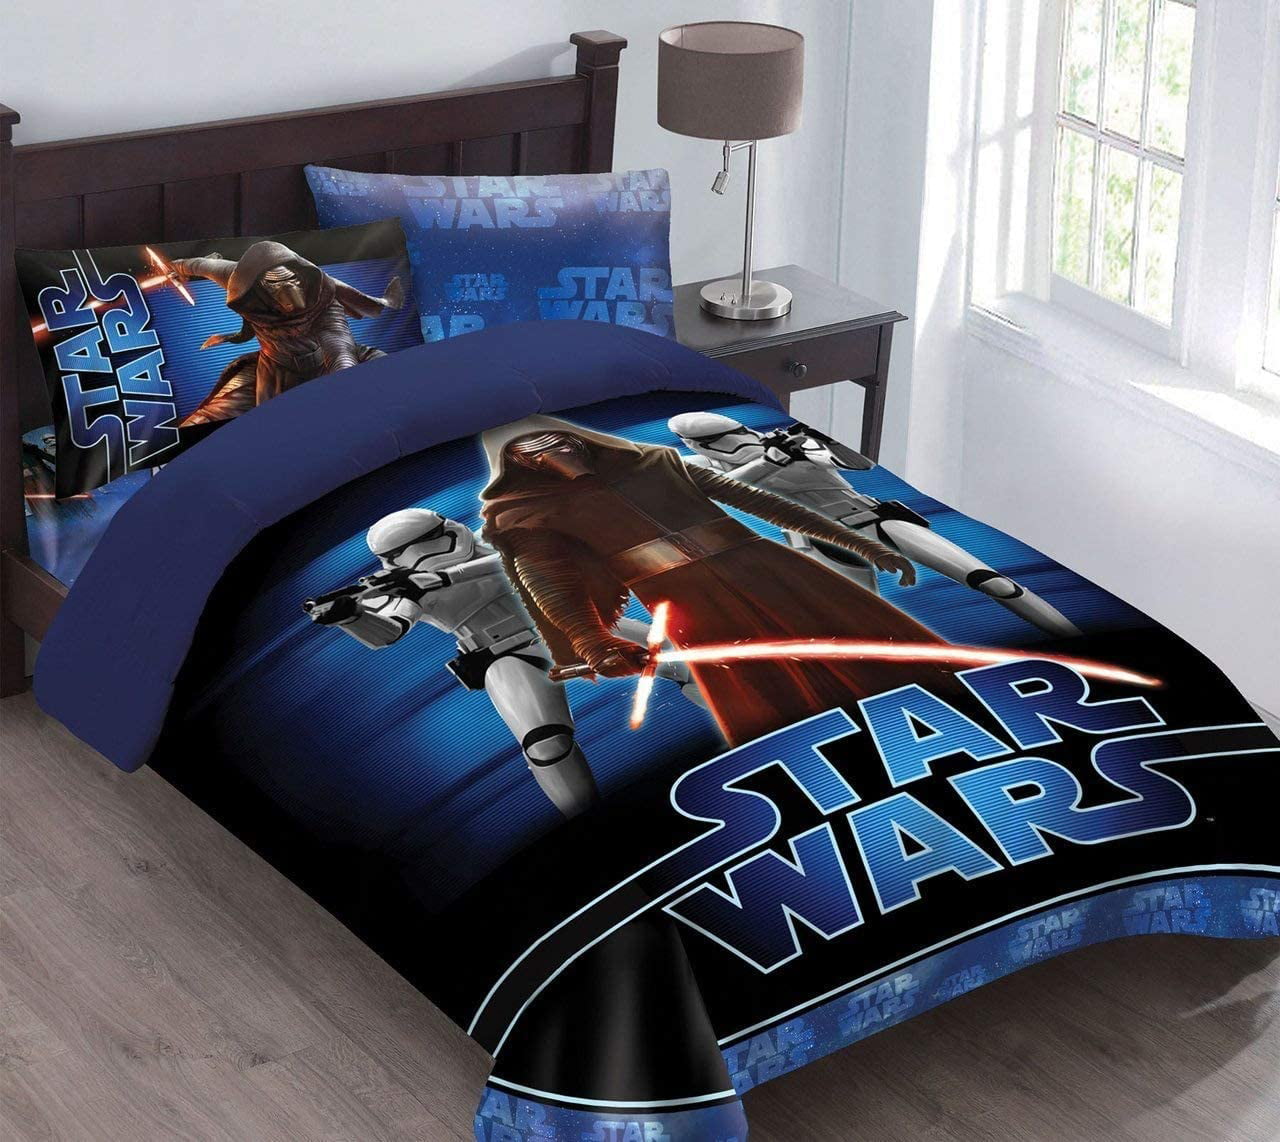 Disney Star Wars Episode VIII The Last Jedi Full Comforter & 4-Pc Full Sheet Set 